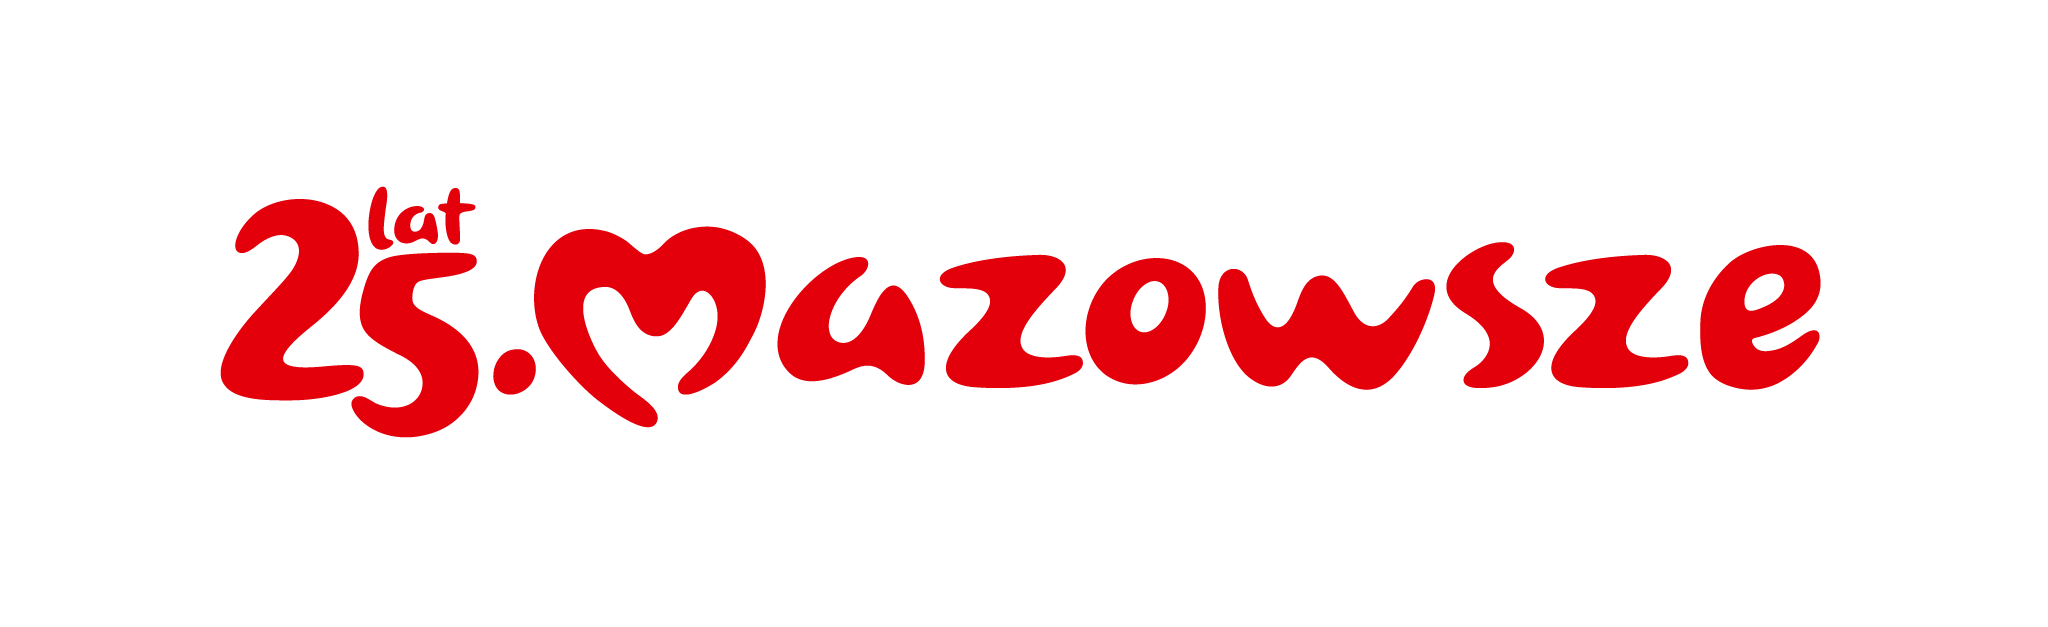 Logotyp 25 lat Mazowsze 